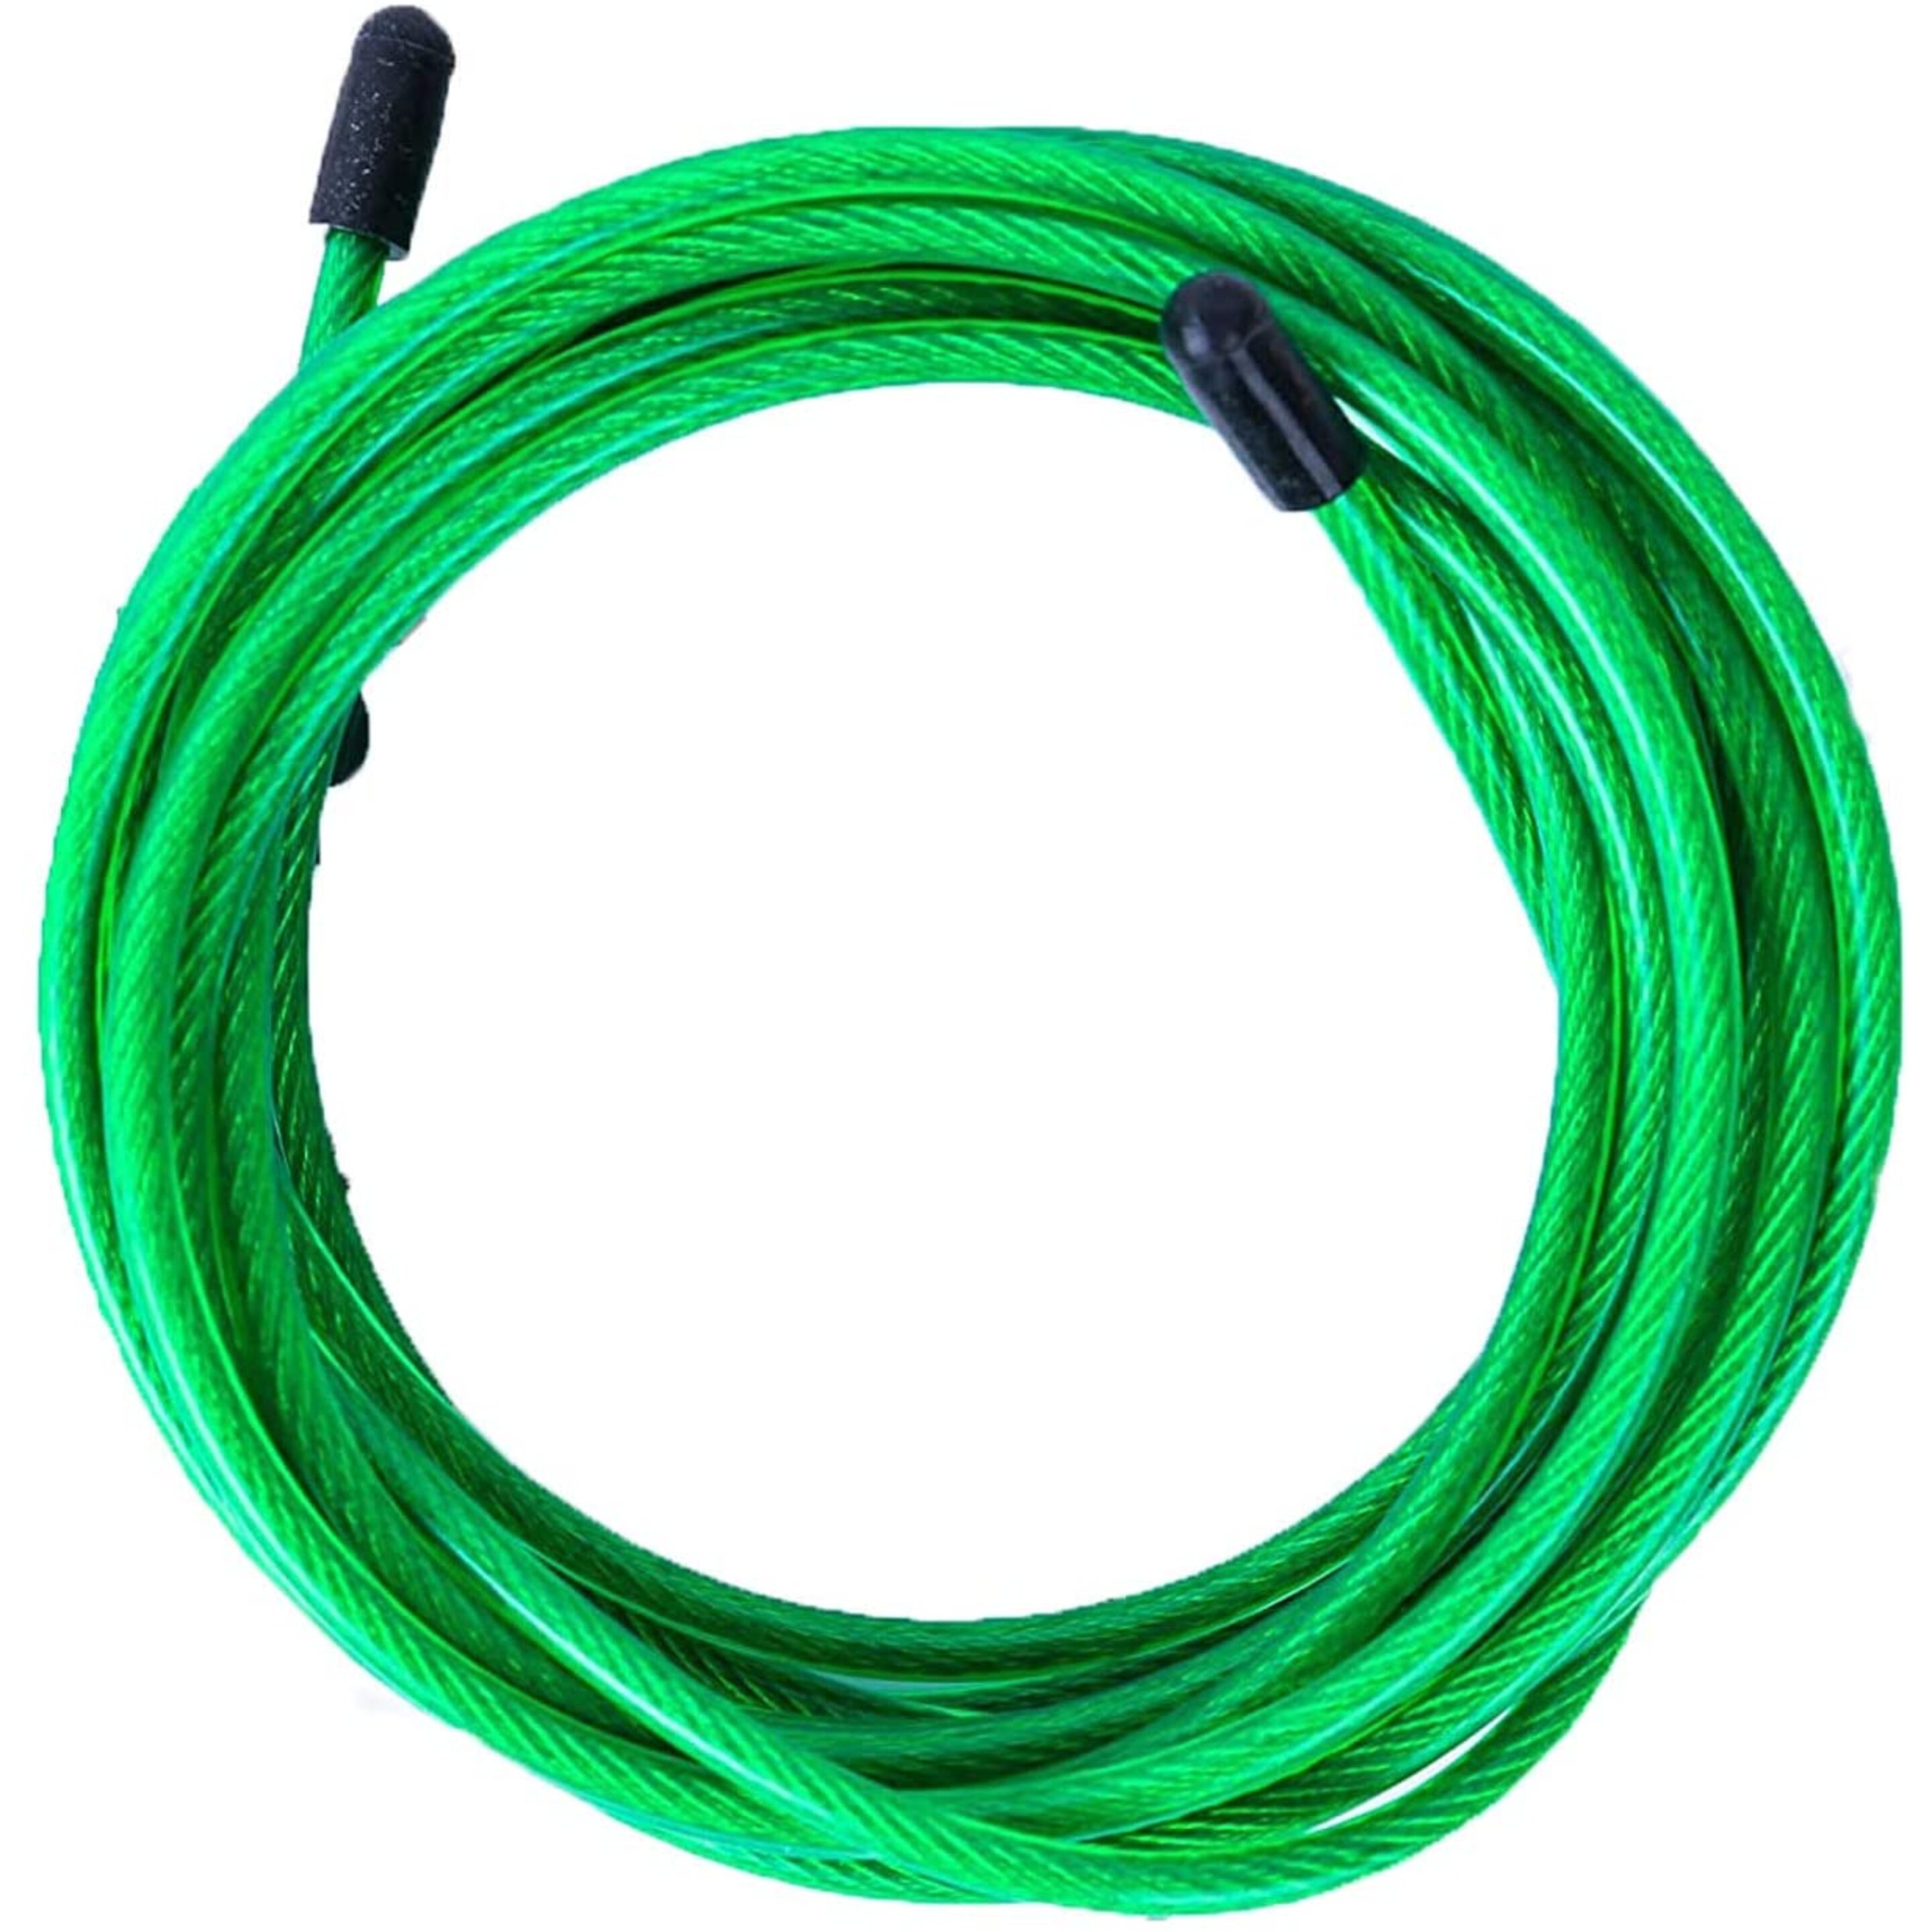 Cable De Repuesto Para Comba De Saltar Pvc Verde Y Acero De 4 Mm